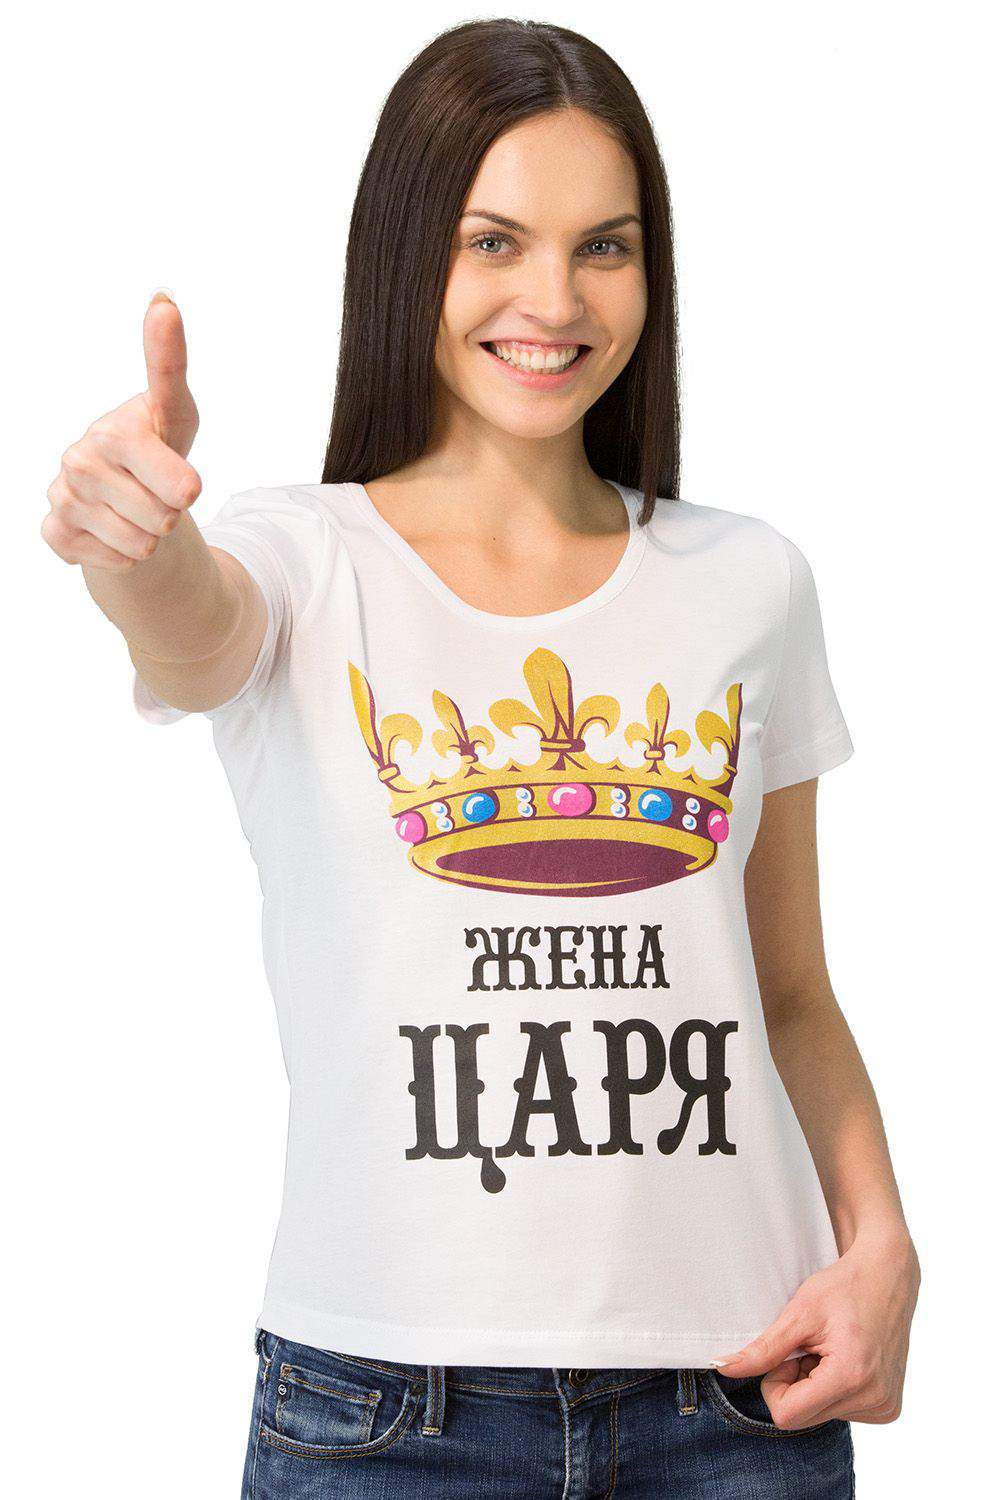 Царь жена царя футболки